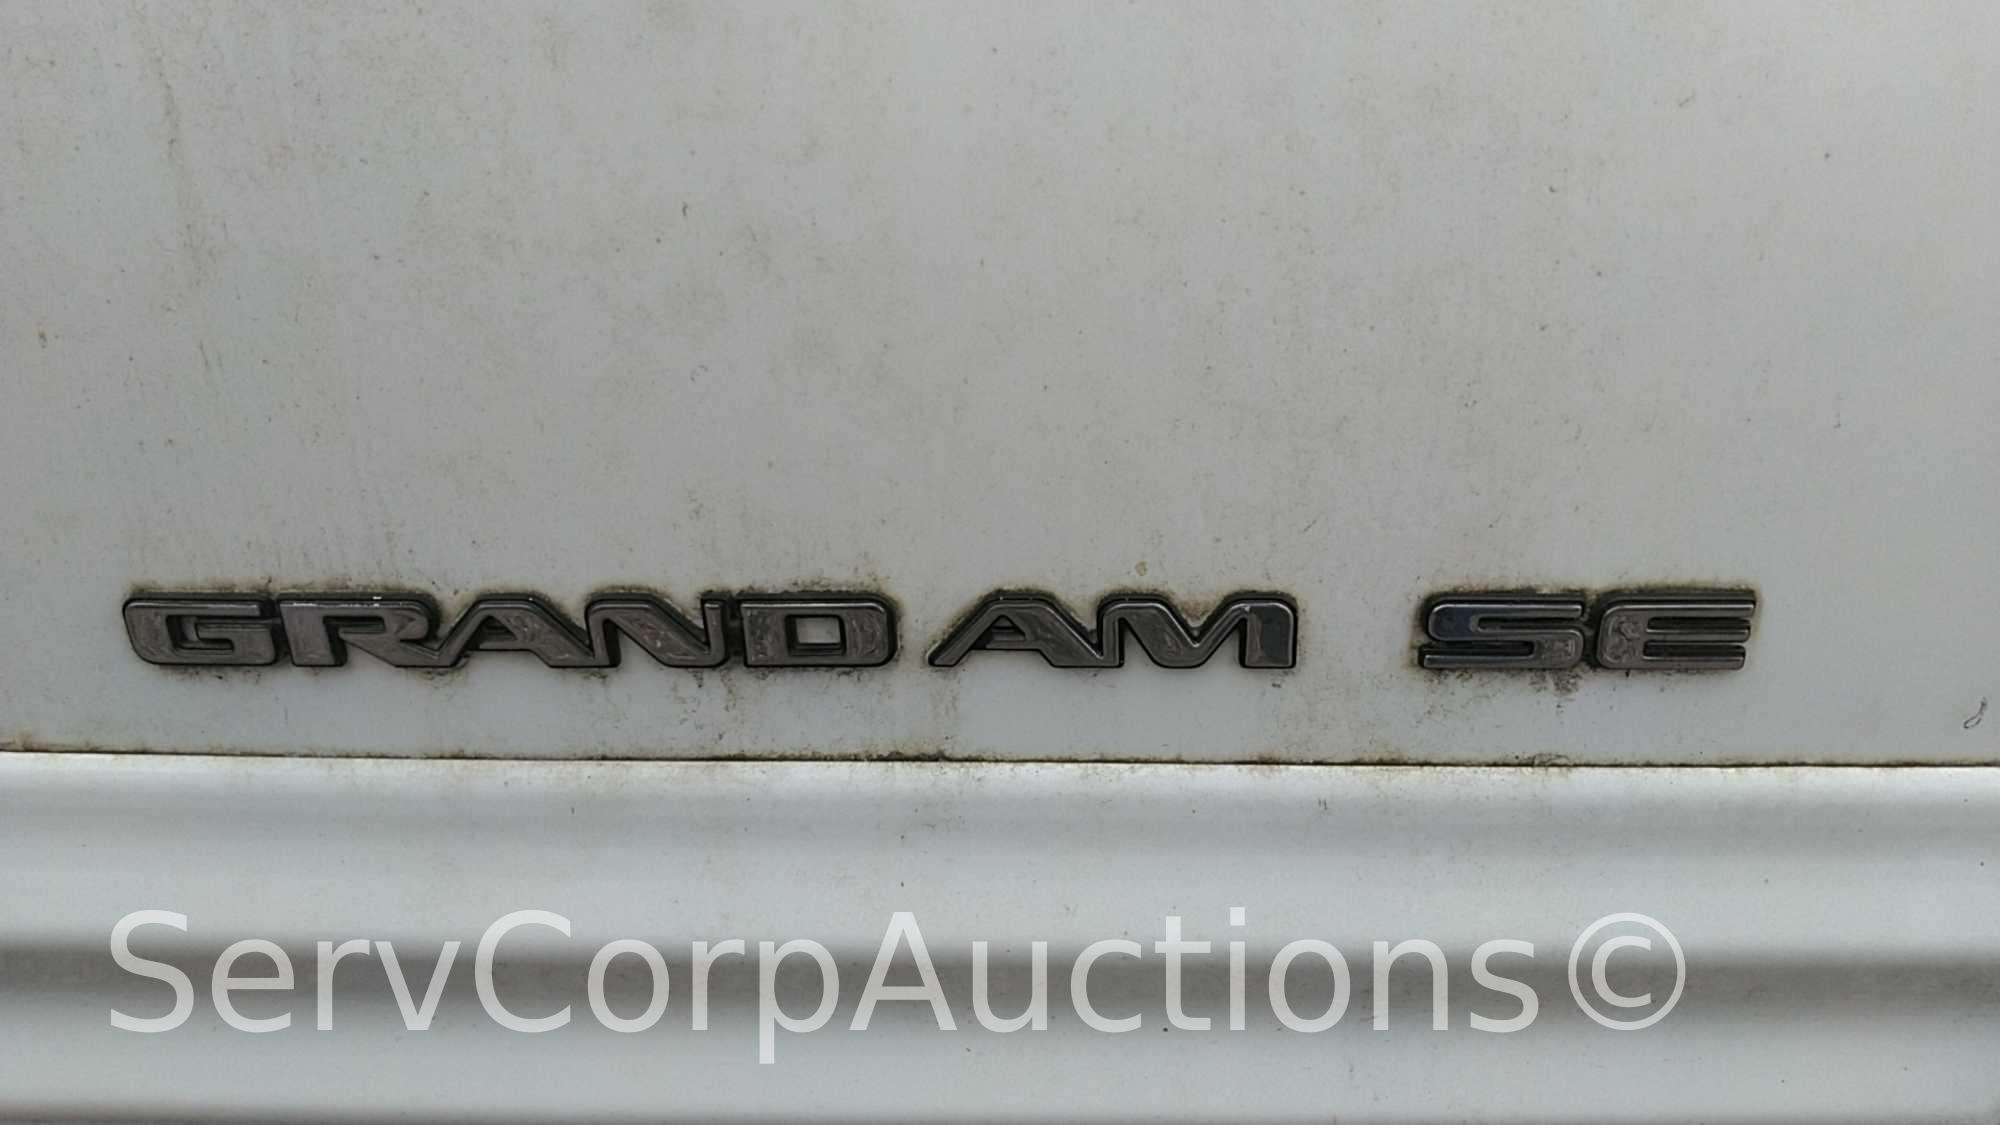 1999 Pontiac Grand Am Passenger Car, VIN # 1G2NE52E5XM725551, Salvage